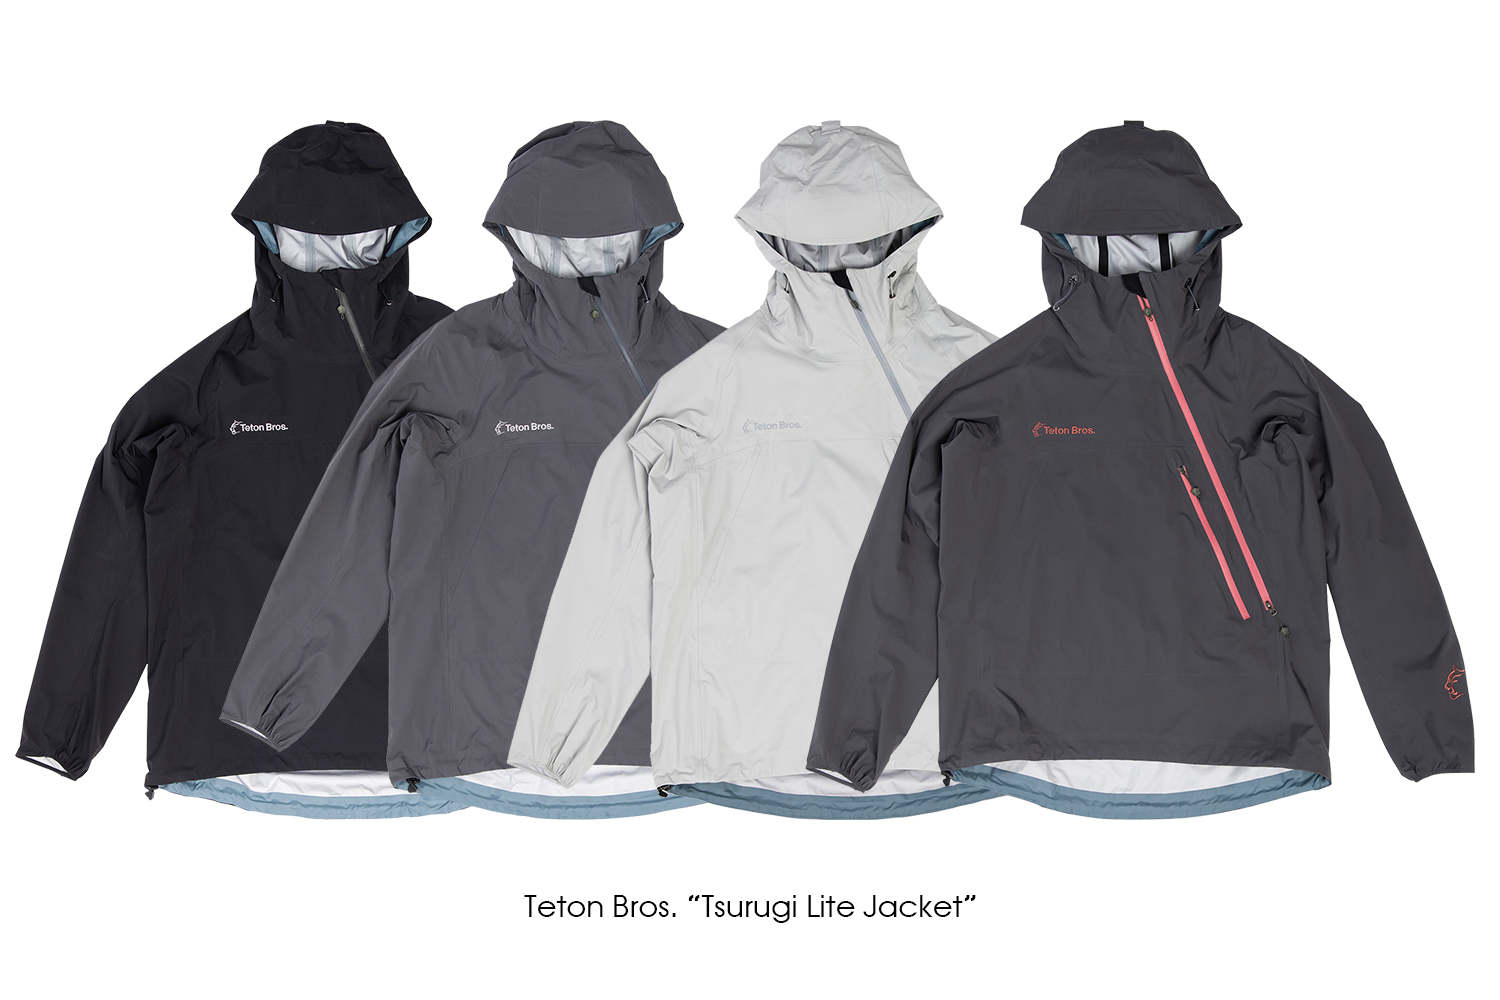 Teton Bros. "Tsurugi Lite Jacket 2.0"